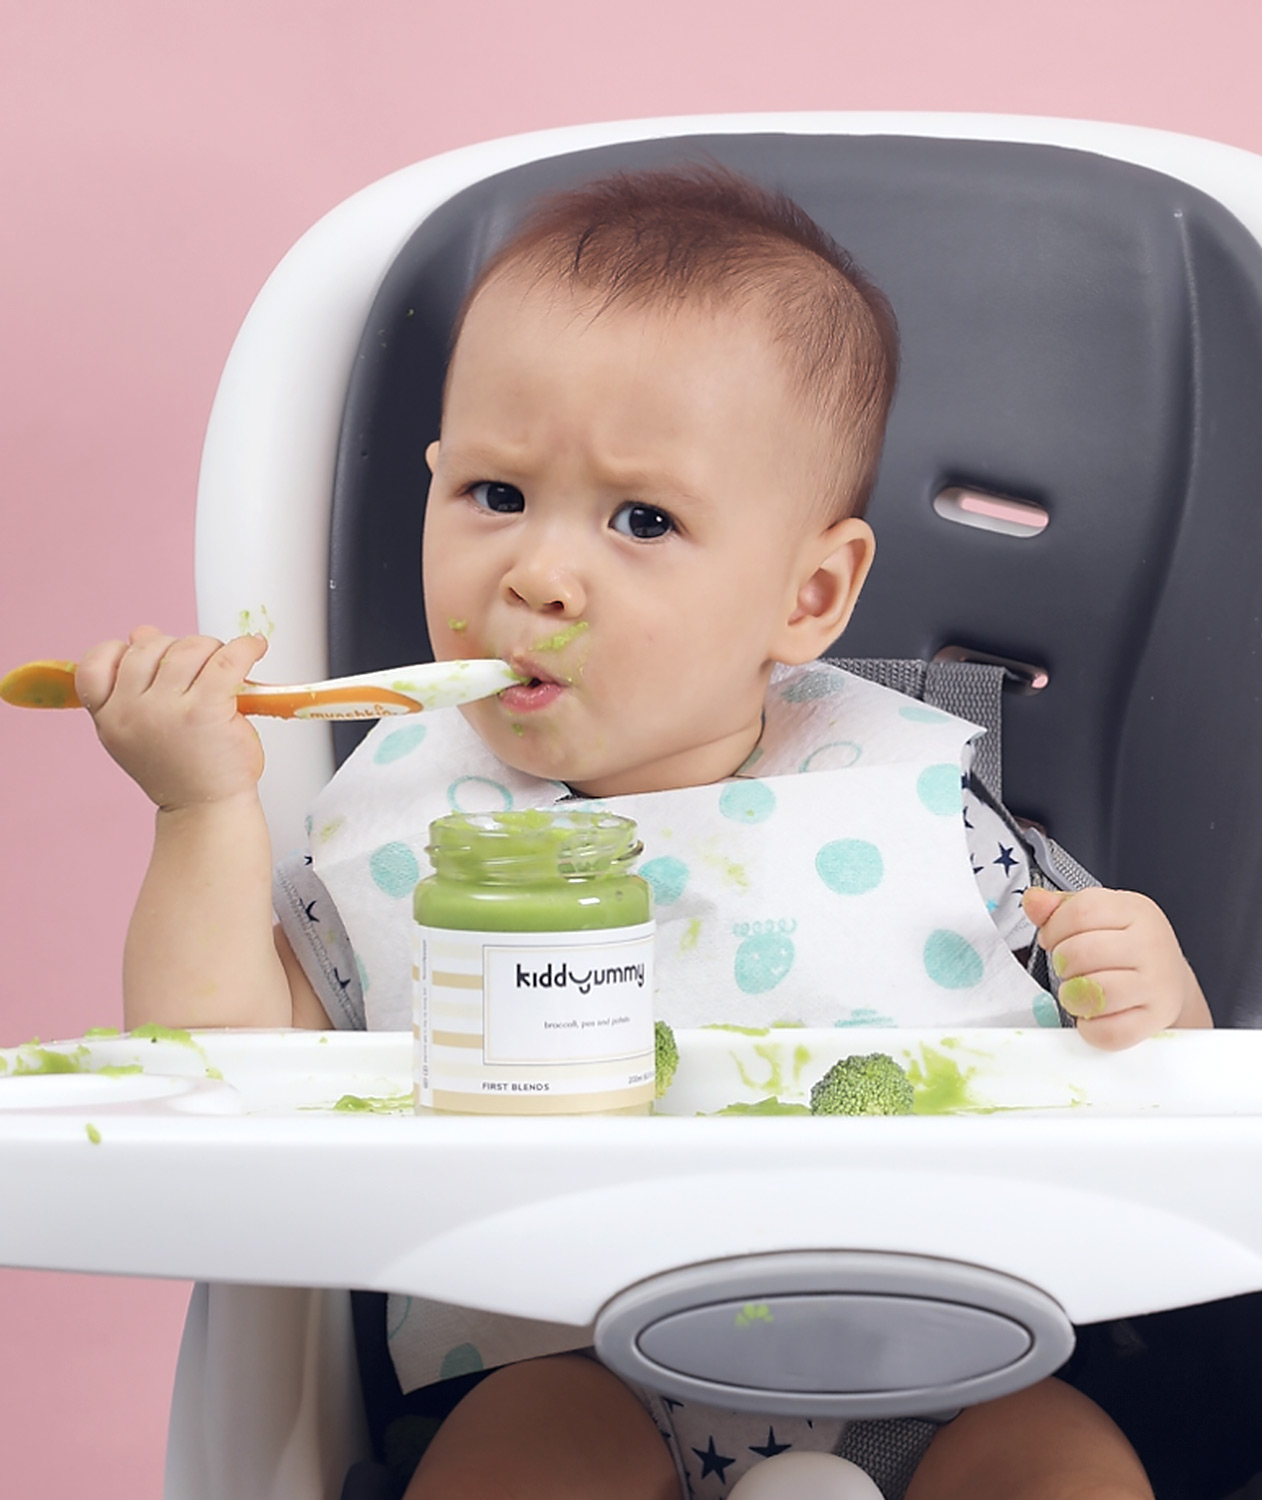 Asian baby boy sitting on chair having Kiddyummy meal